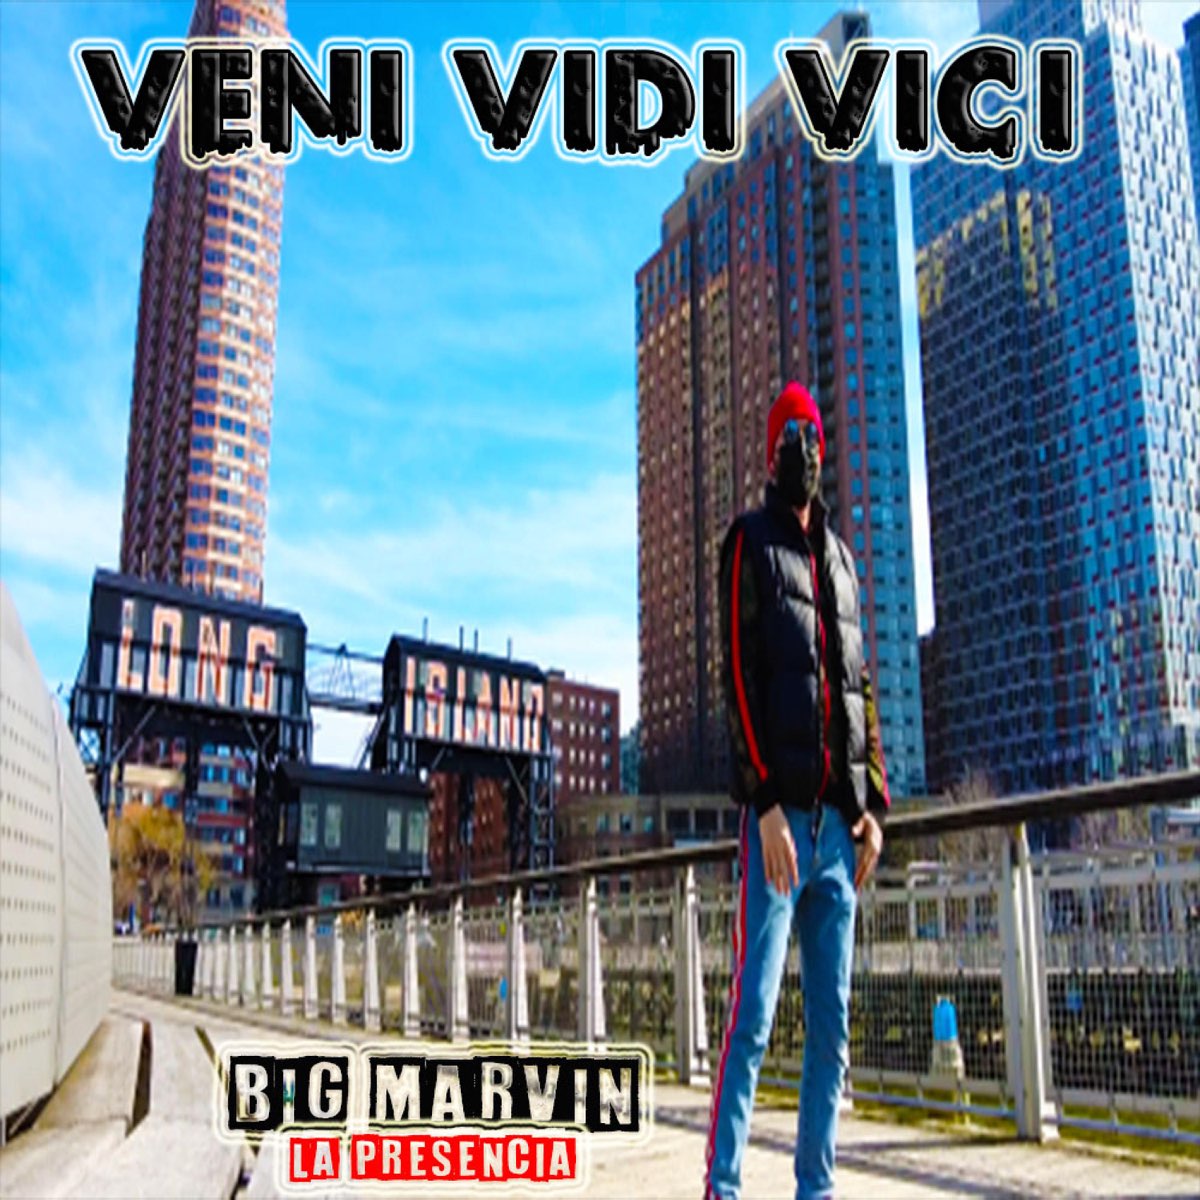 ‎VENI VIDI VICI INTRO ALBUM - Single by Big Marvin on Apple Music